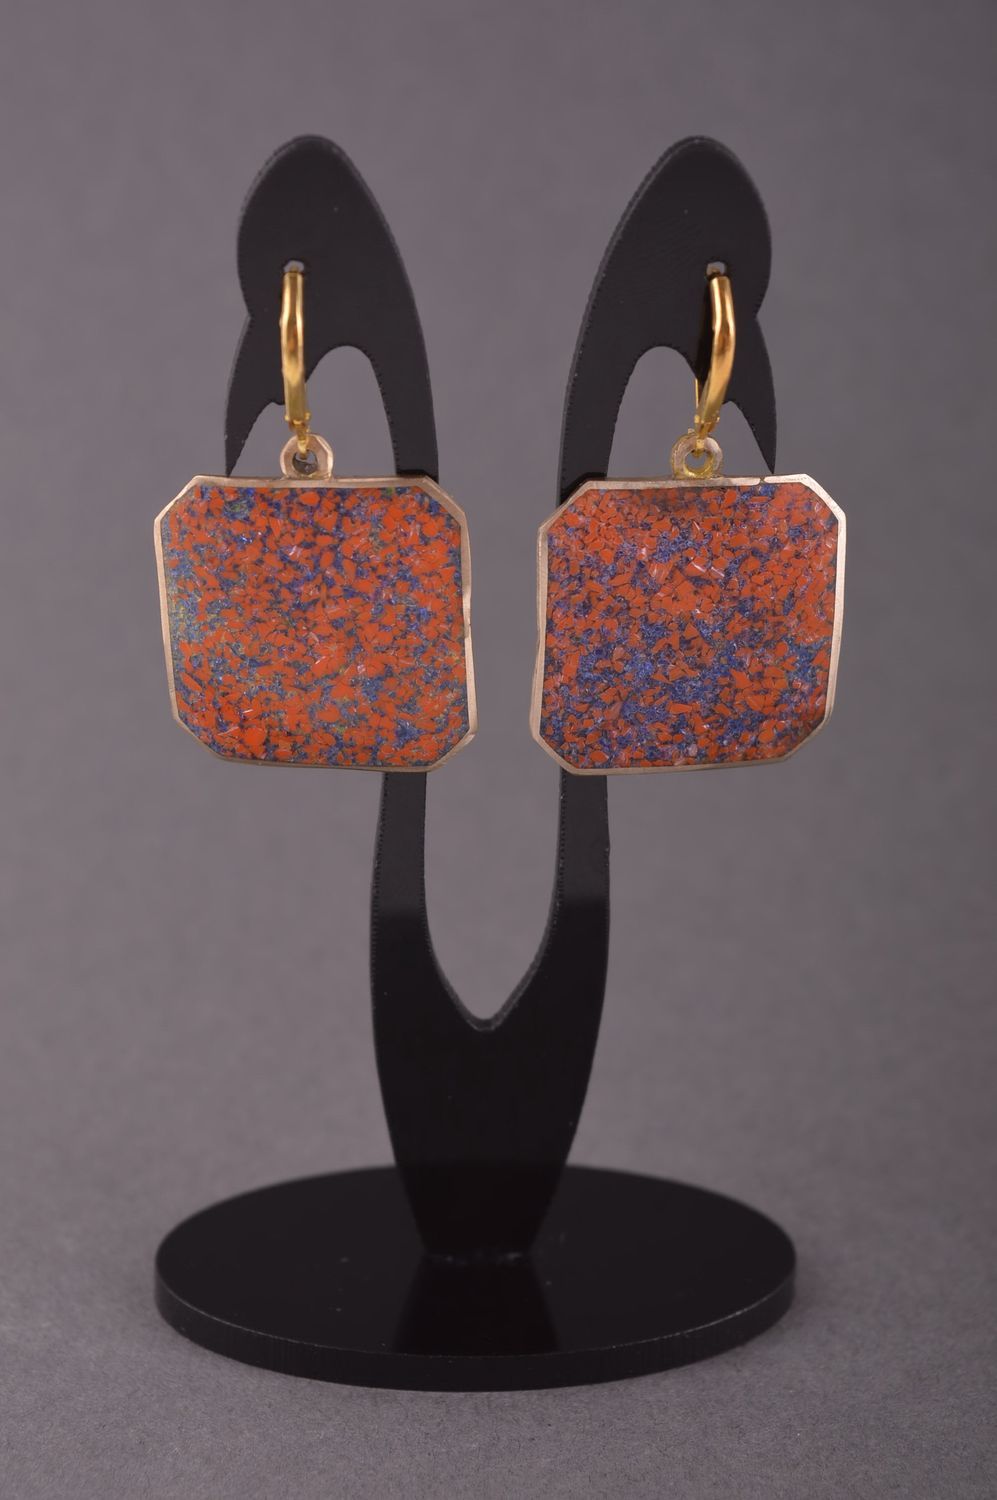 Украшение из латуни handmade серьги из натуральных камней модные серьги стильные фото 1